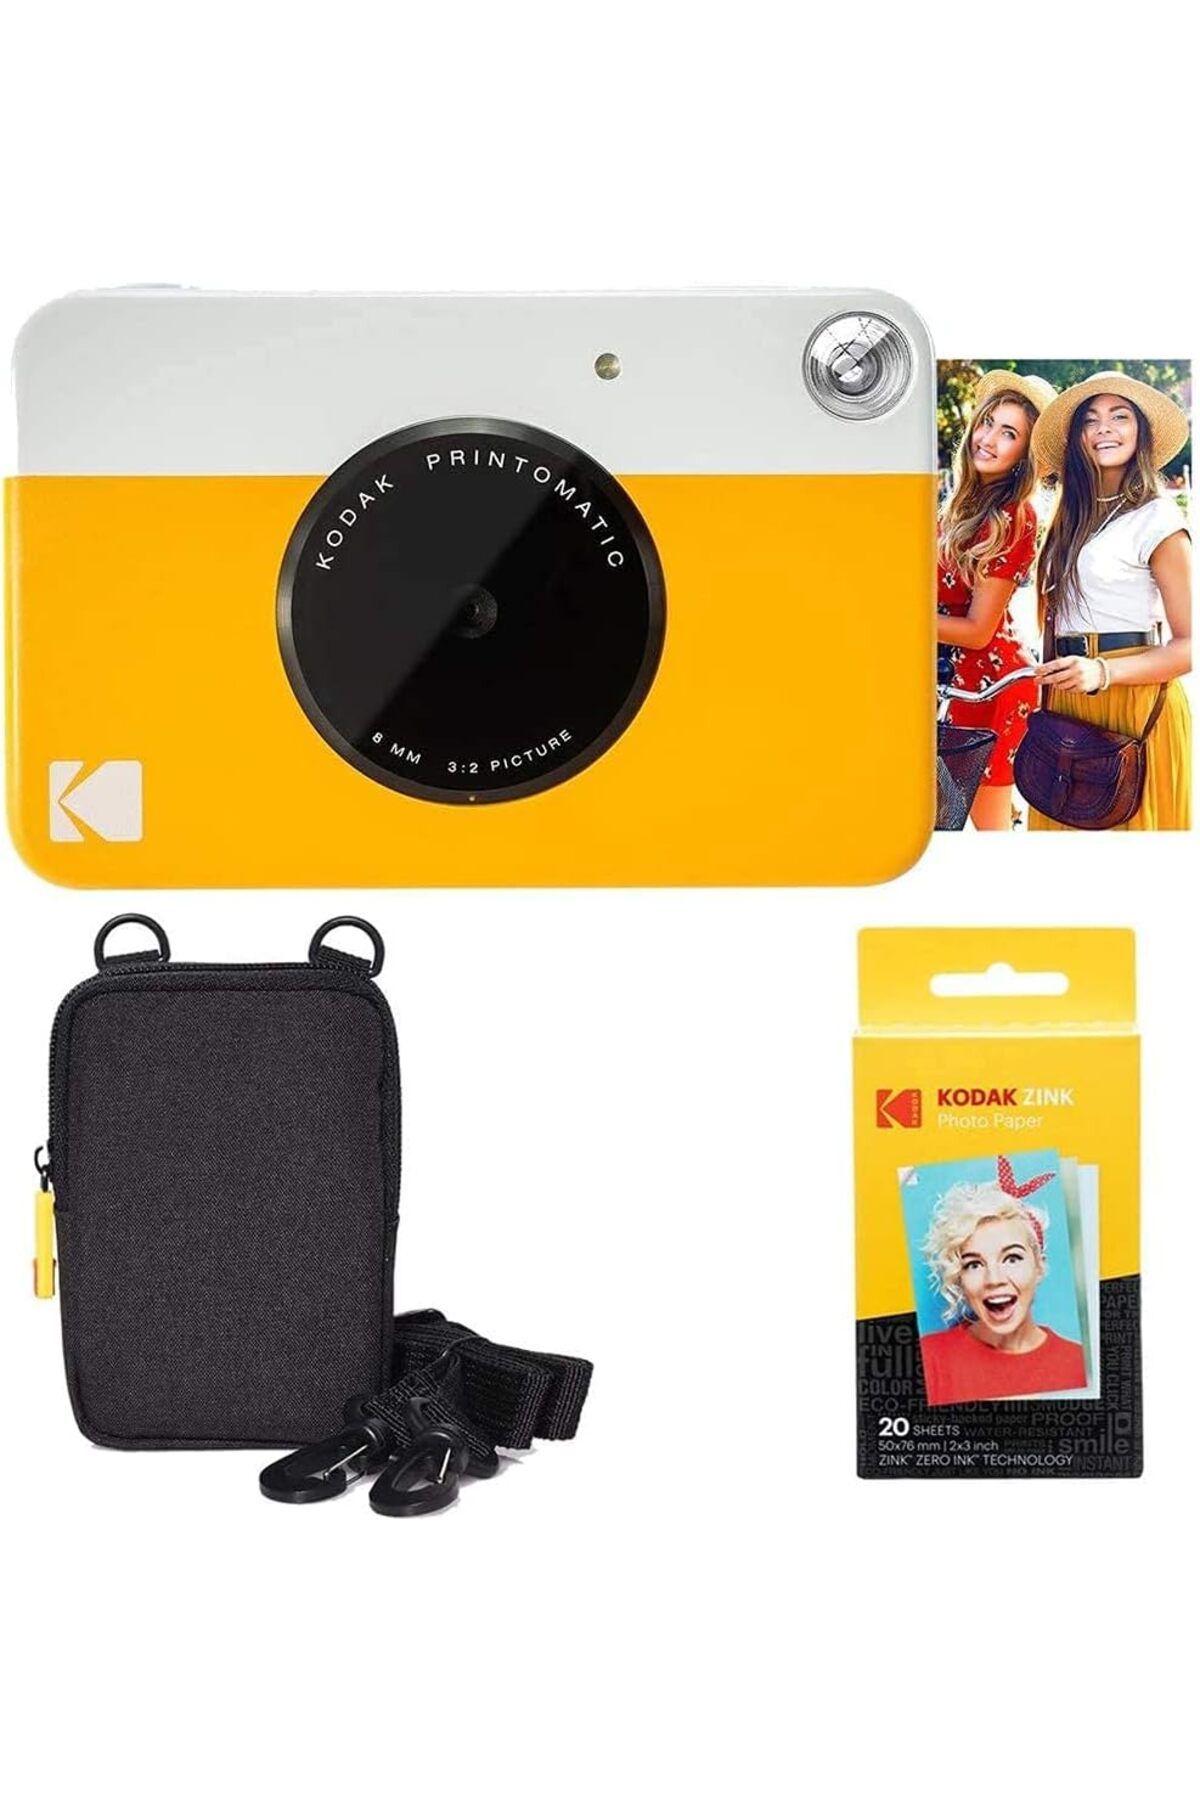 Kodak Printomatic Fotoğraf Makinesi Temel Paket + 20 Sayfa Çinko Kağıt ve Kılıf ile Rahat Boyun Askısı